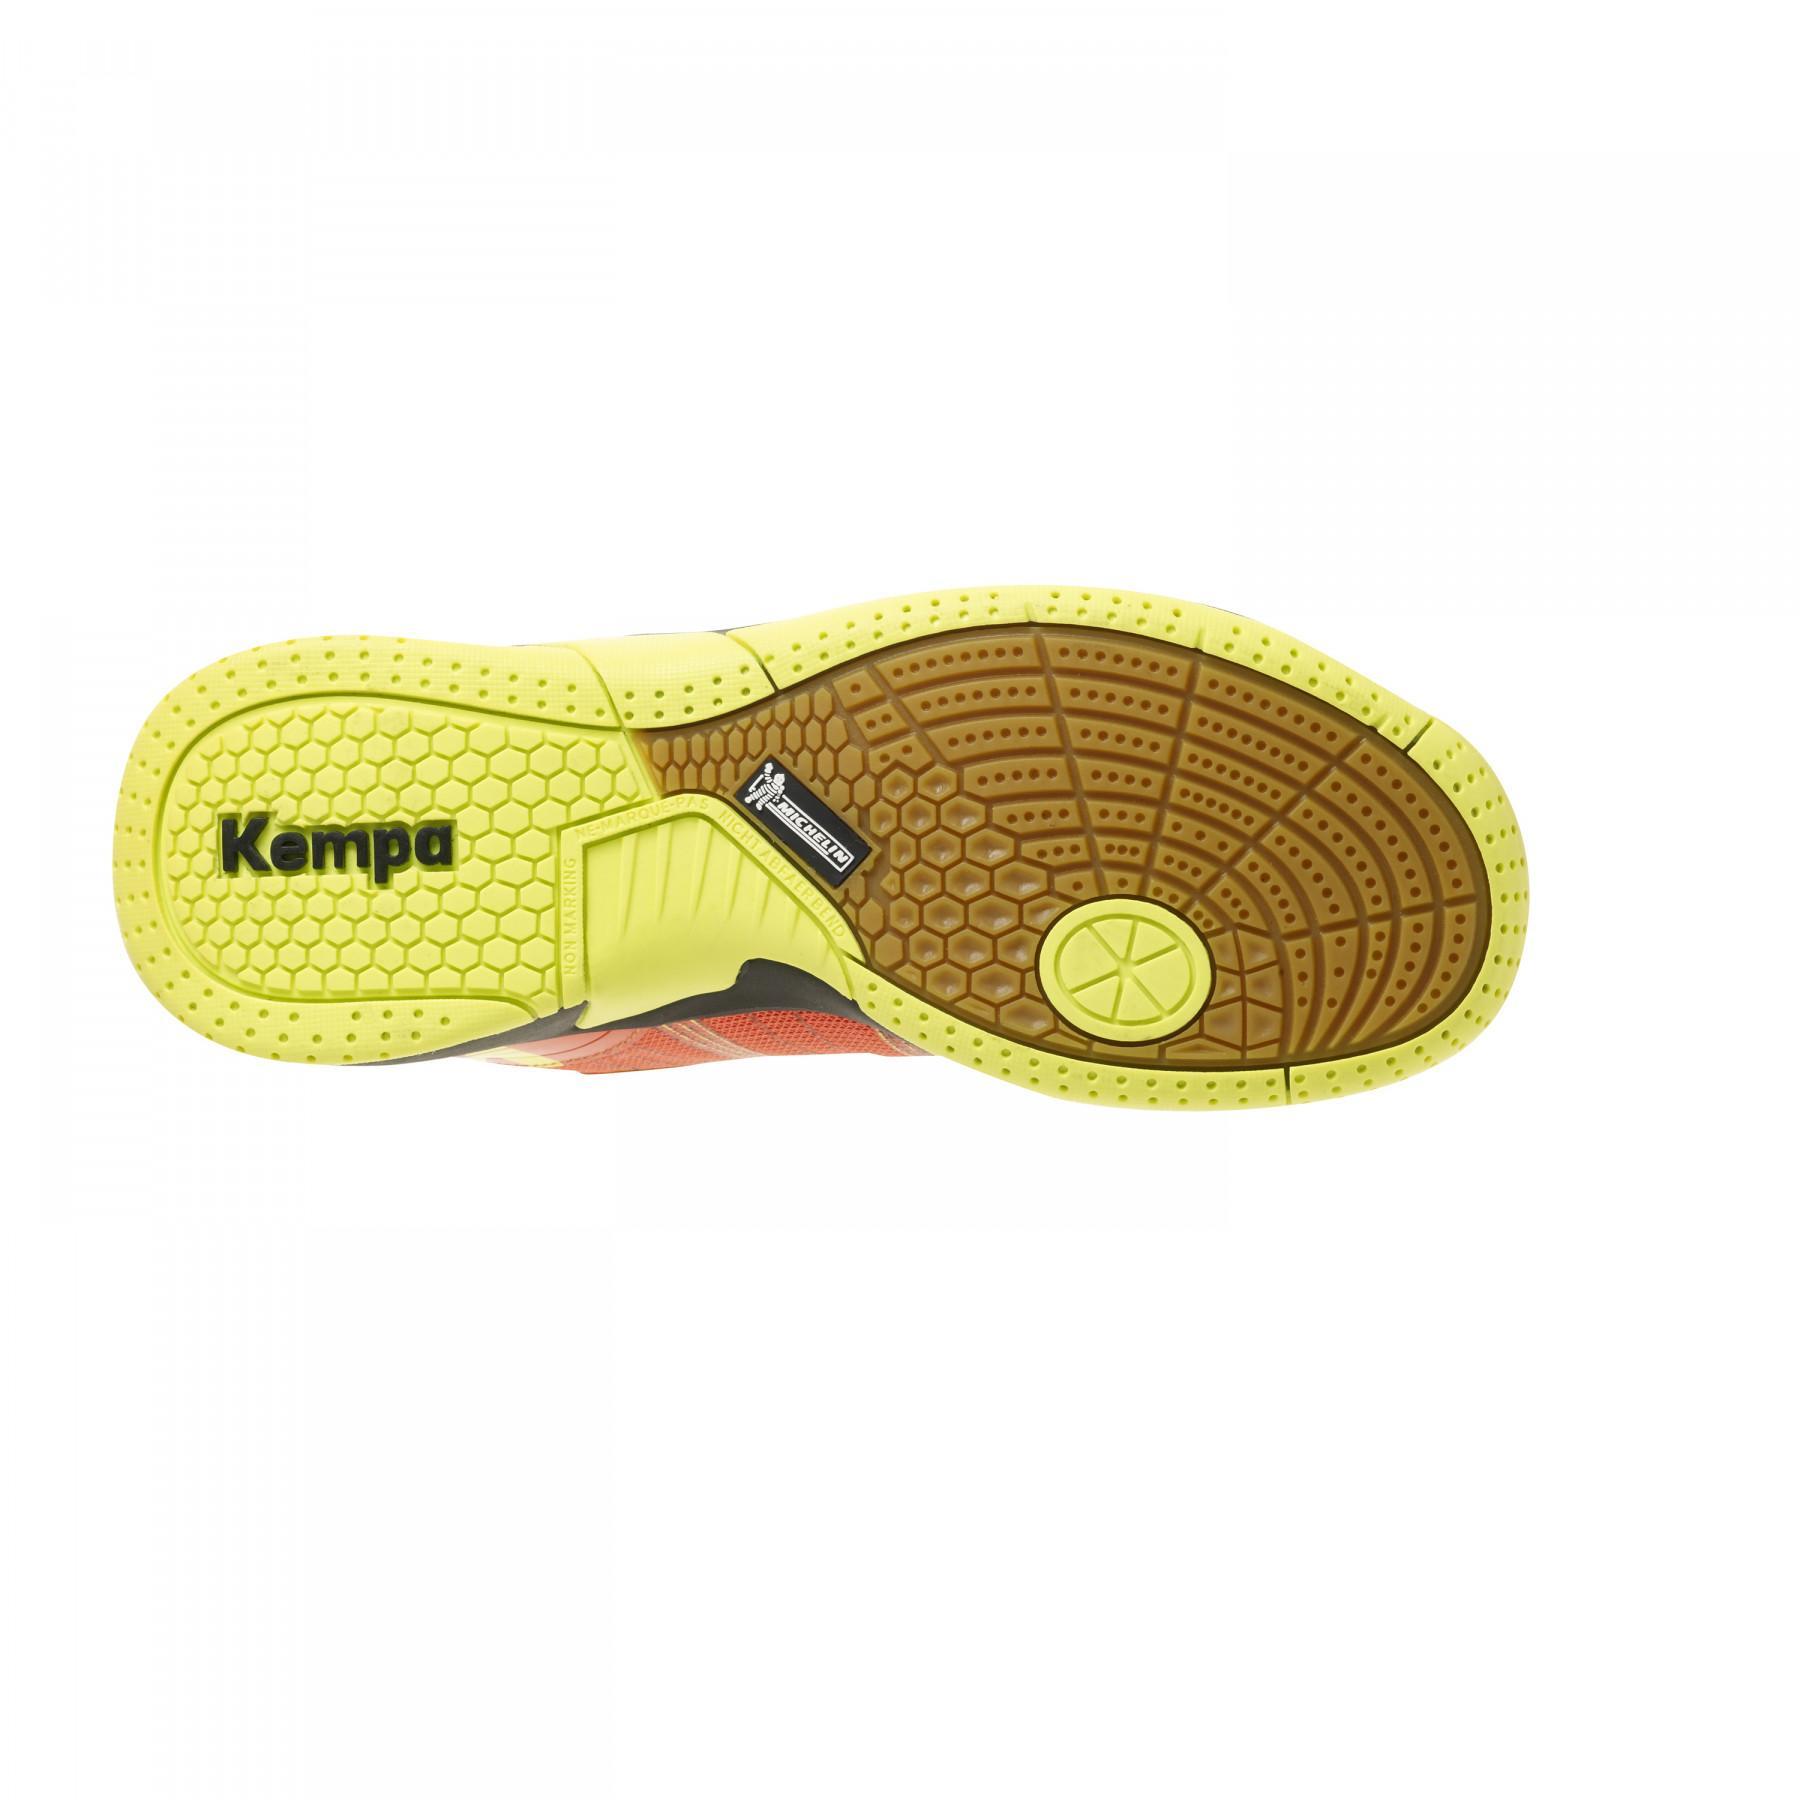 Skor för barn Kempa Attack Contender